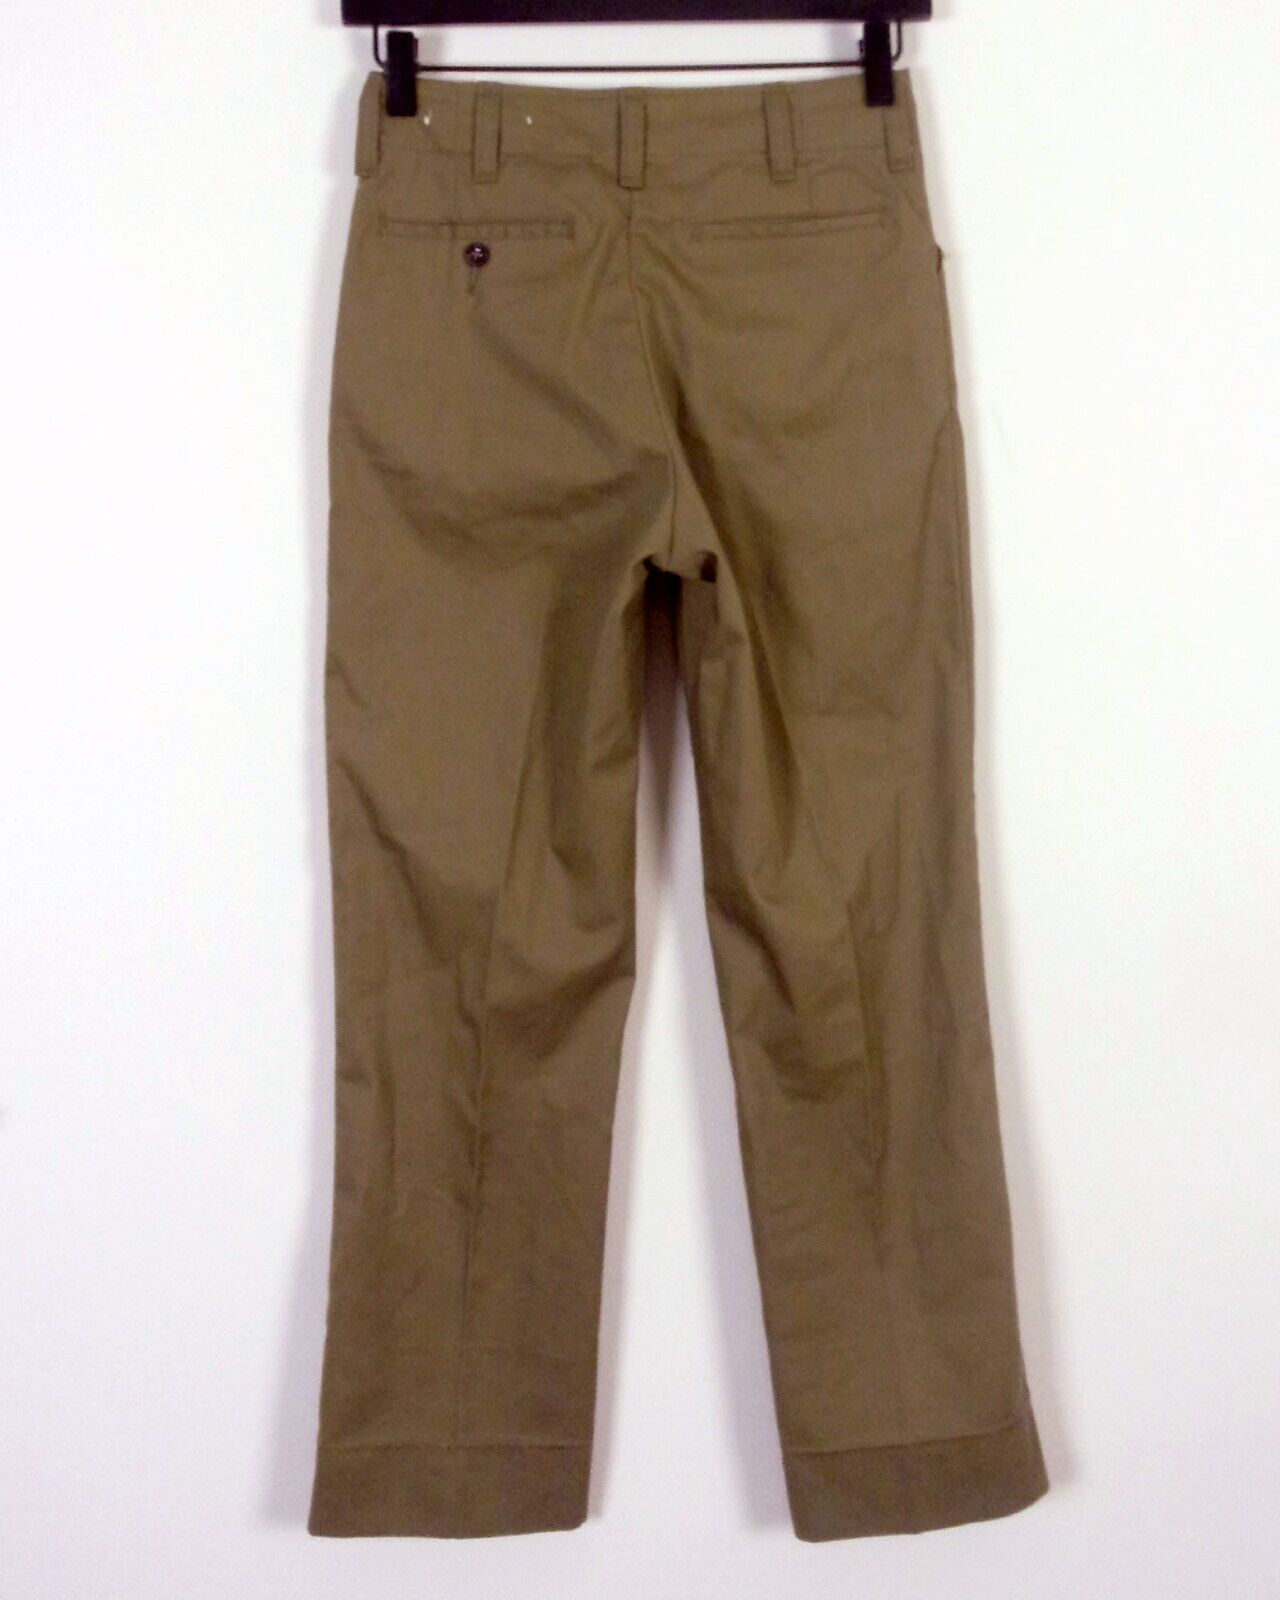 vintage 50s 60s BSA Boy Scouts of America Uniform Pants Trousers 26 X 26